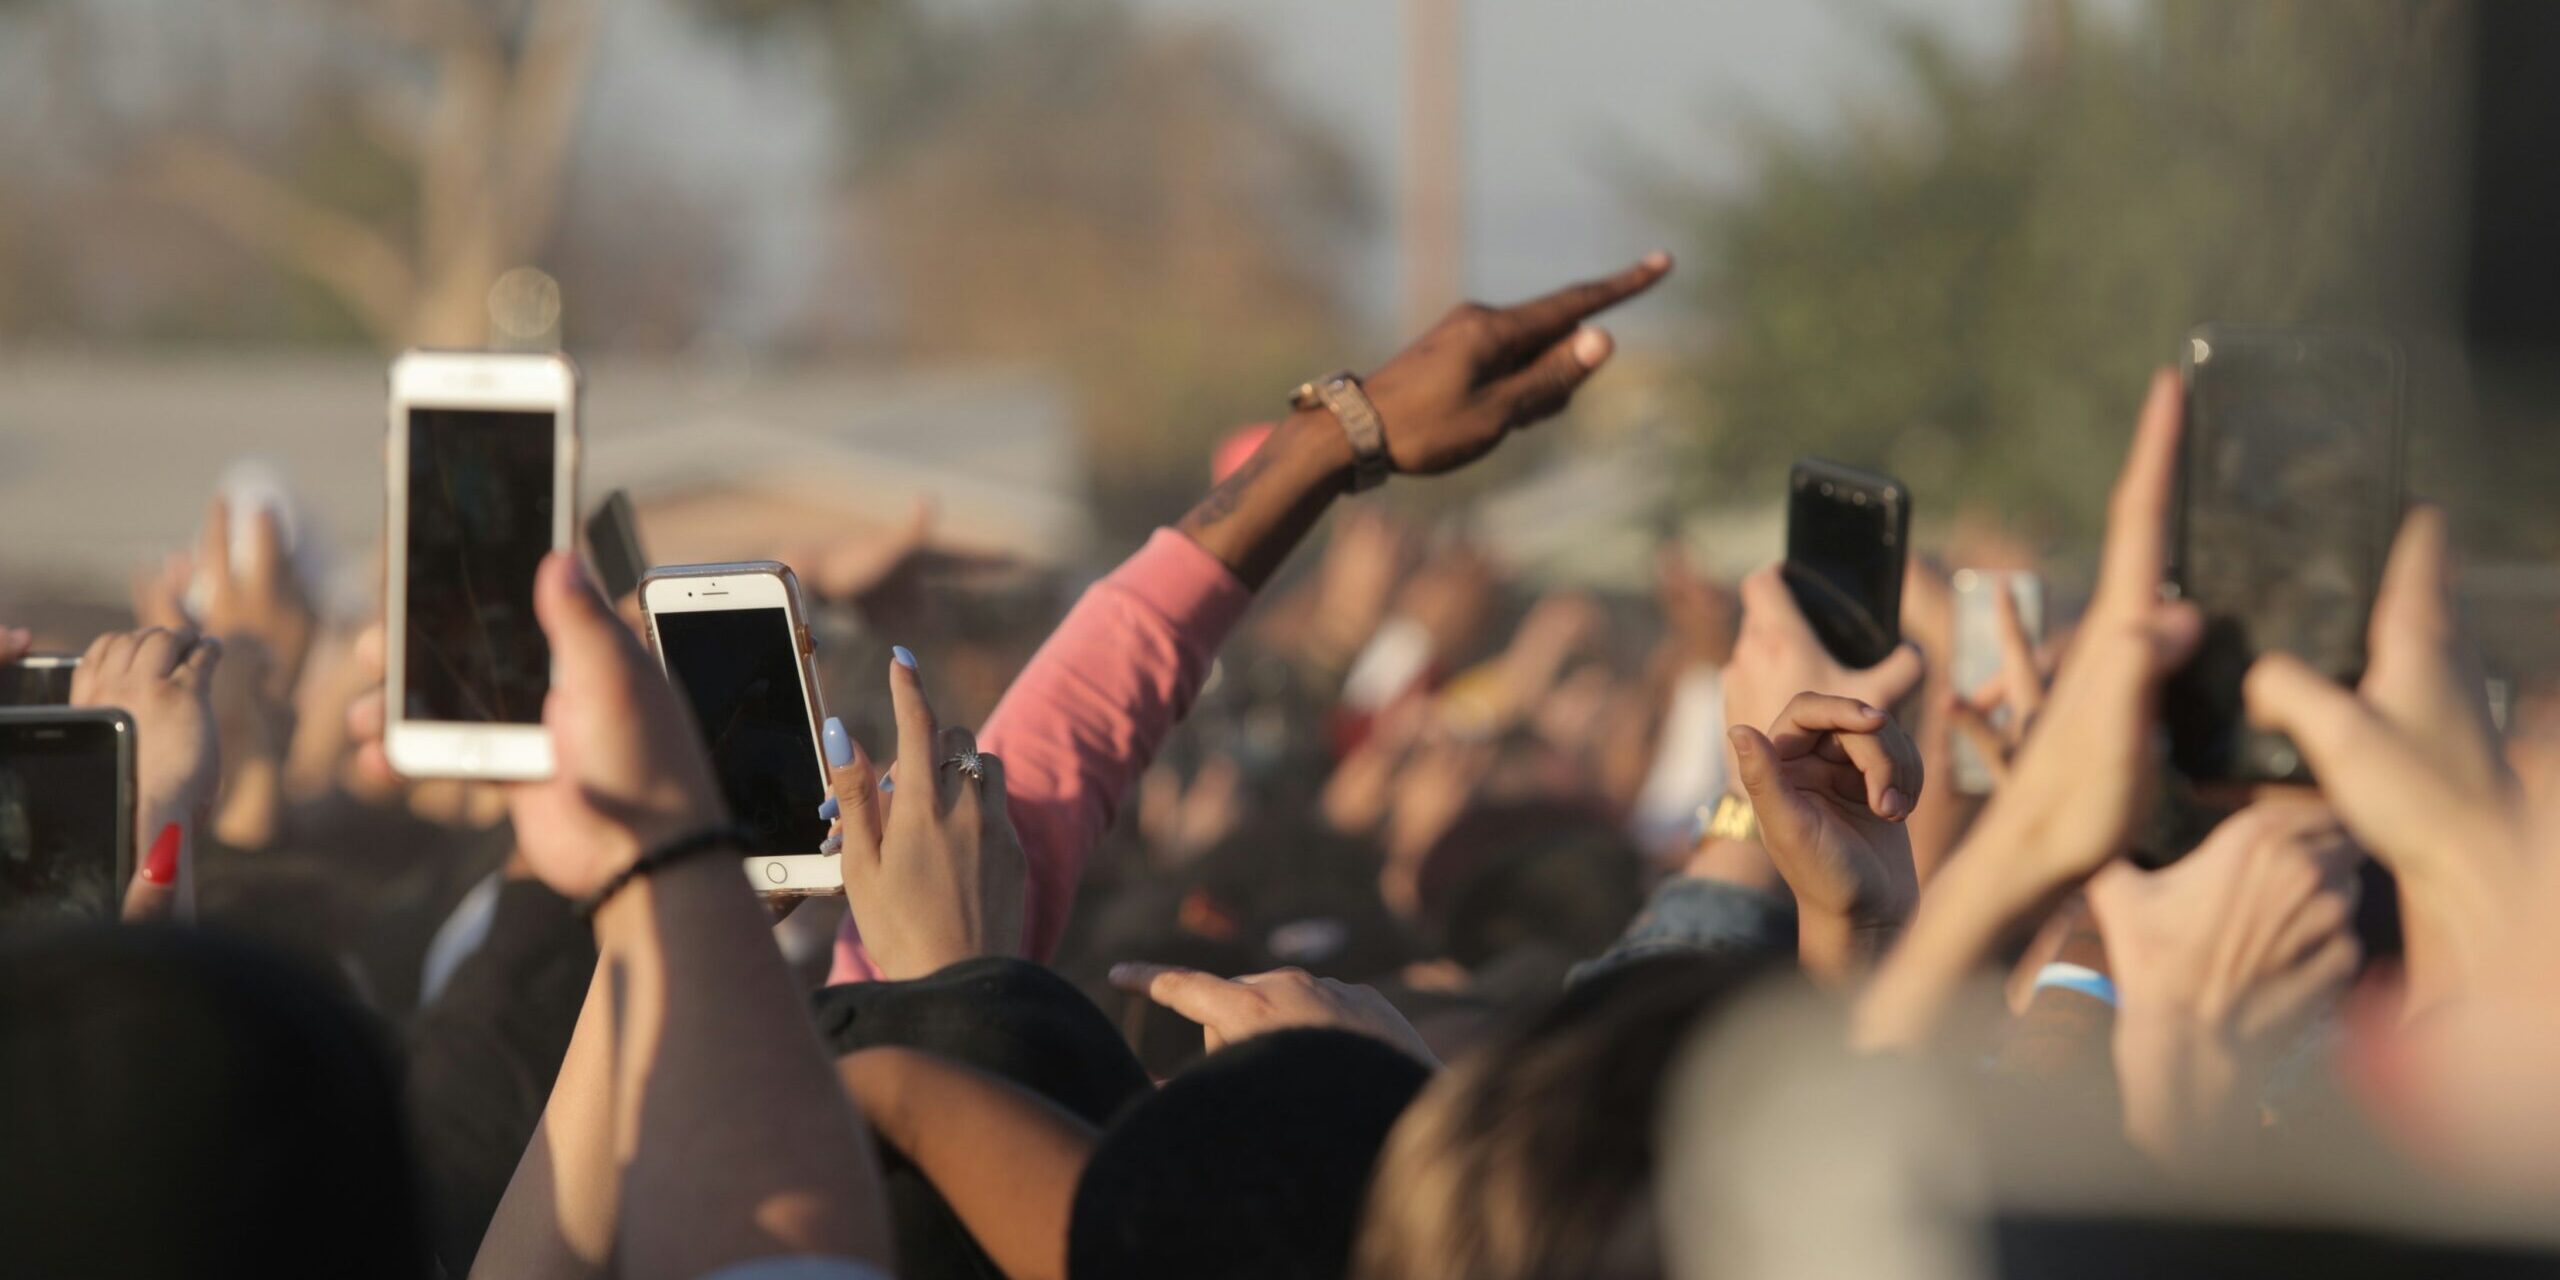 Kuva yleisöstä, jossa useilla ihmisillä on kädet ilmassa. Monet pitelevät kädessään älypuhelinta.